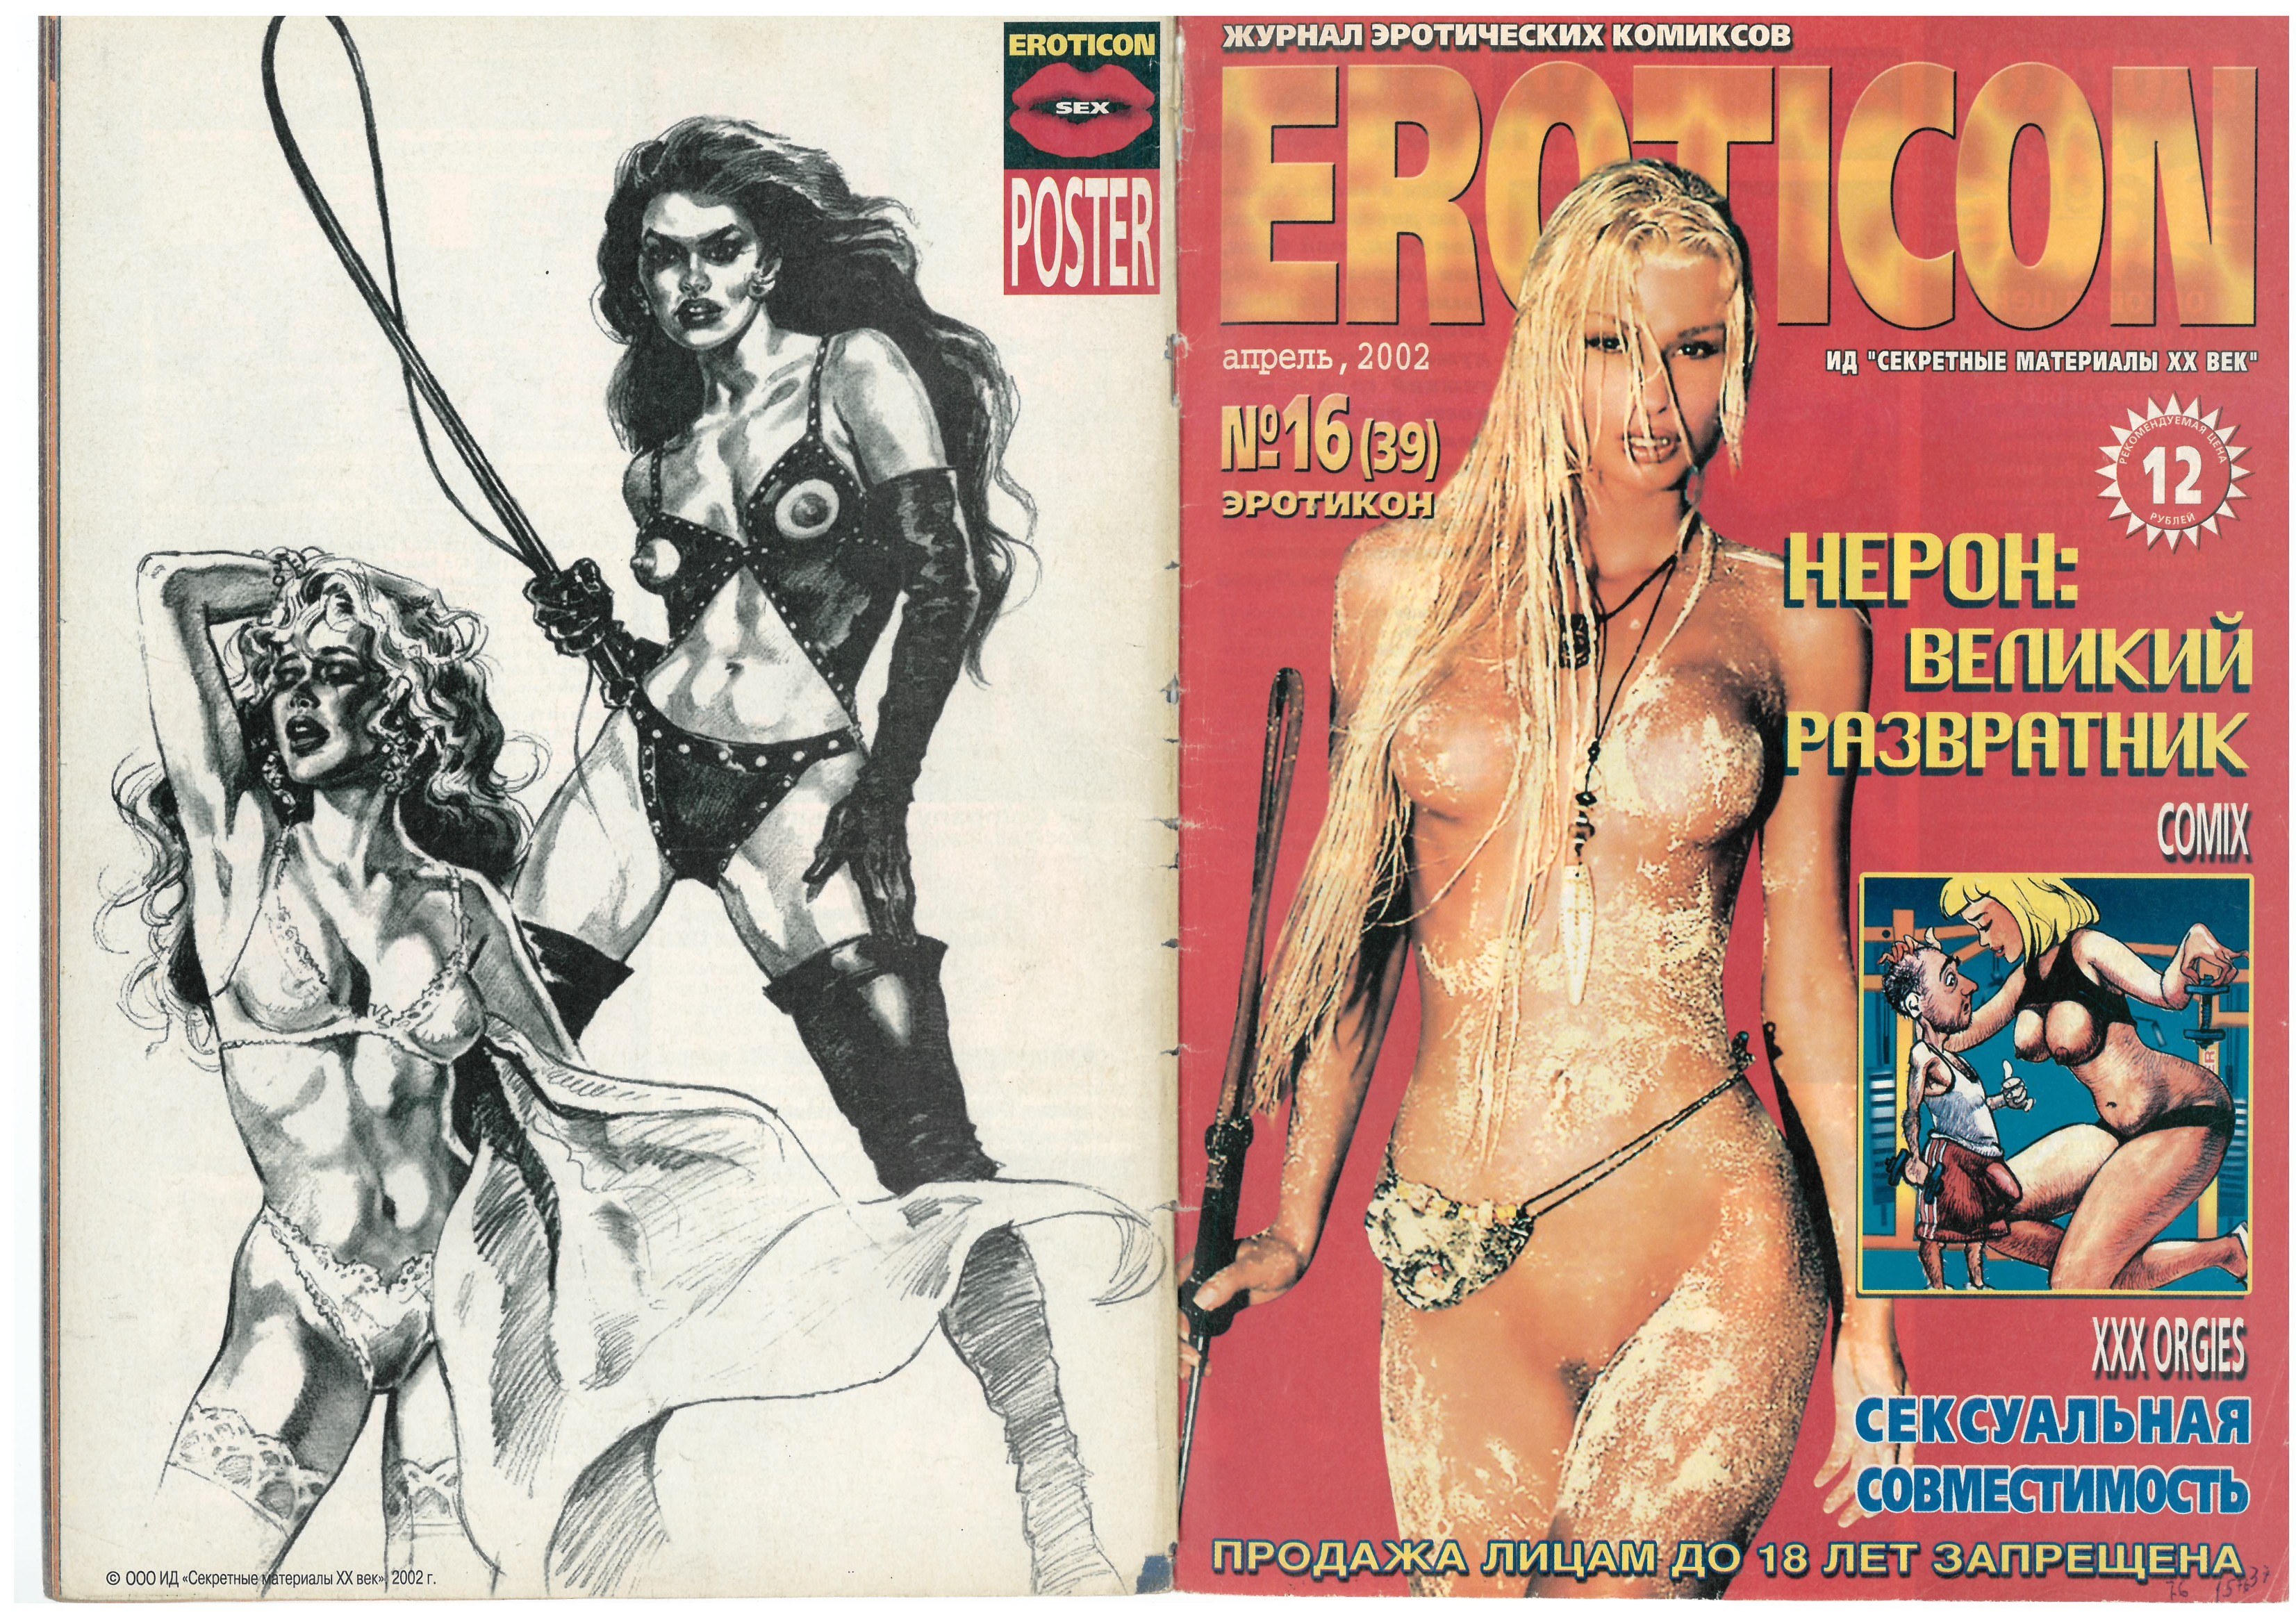 Eroticon - Журнал эротических фотокомиксов ()